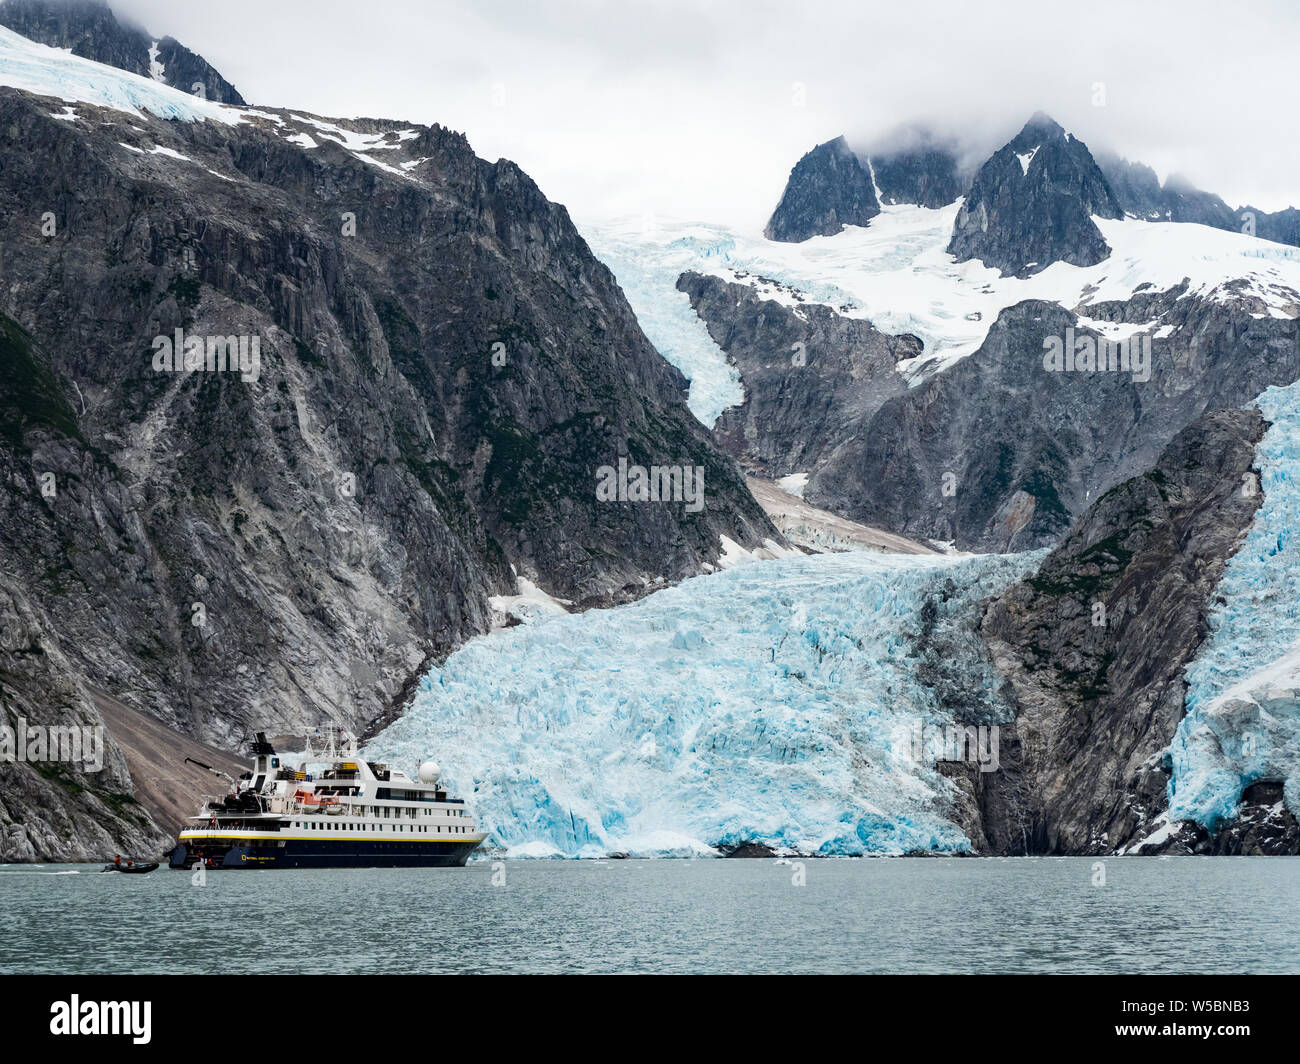 Esplorare la Northwestern ghiacciaio sul bordo del National Geographic Orion nel Parco nazionale di Kenai Fjords, Alaska, STATI UNITI D'AMERICA Foto Stock